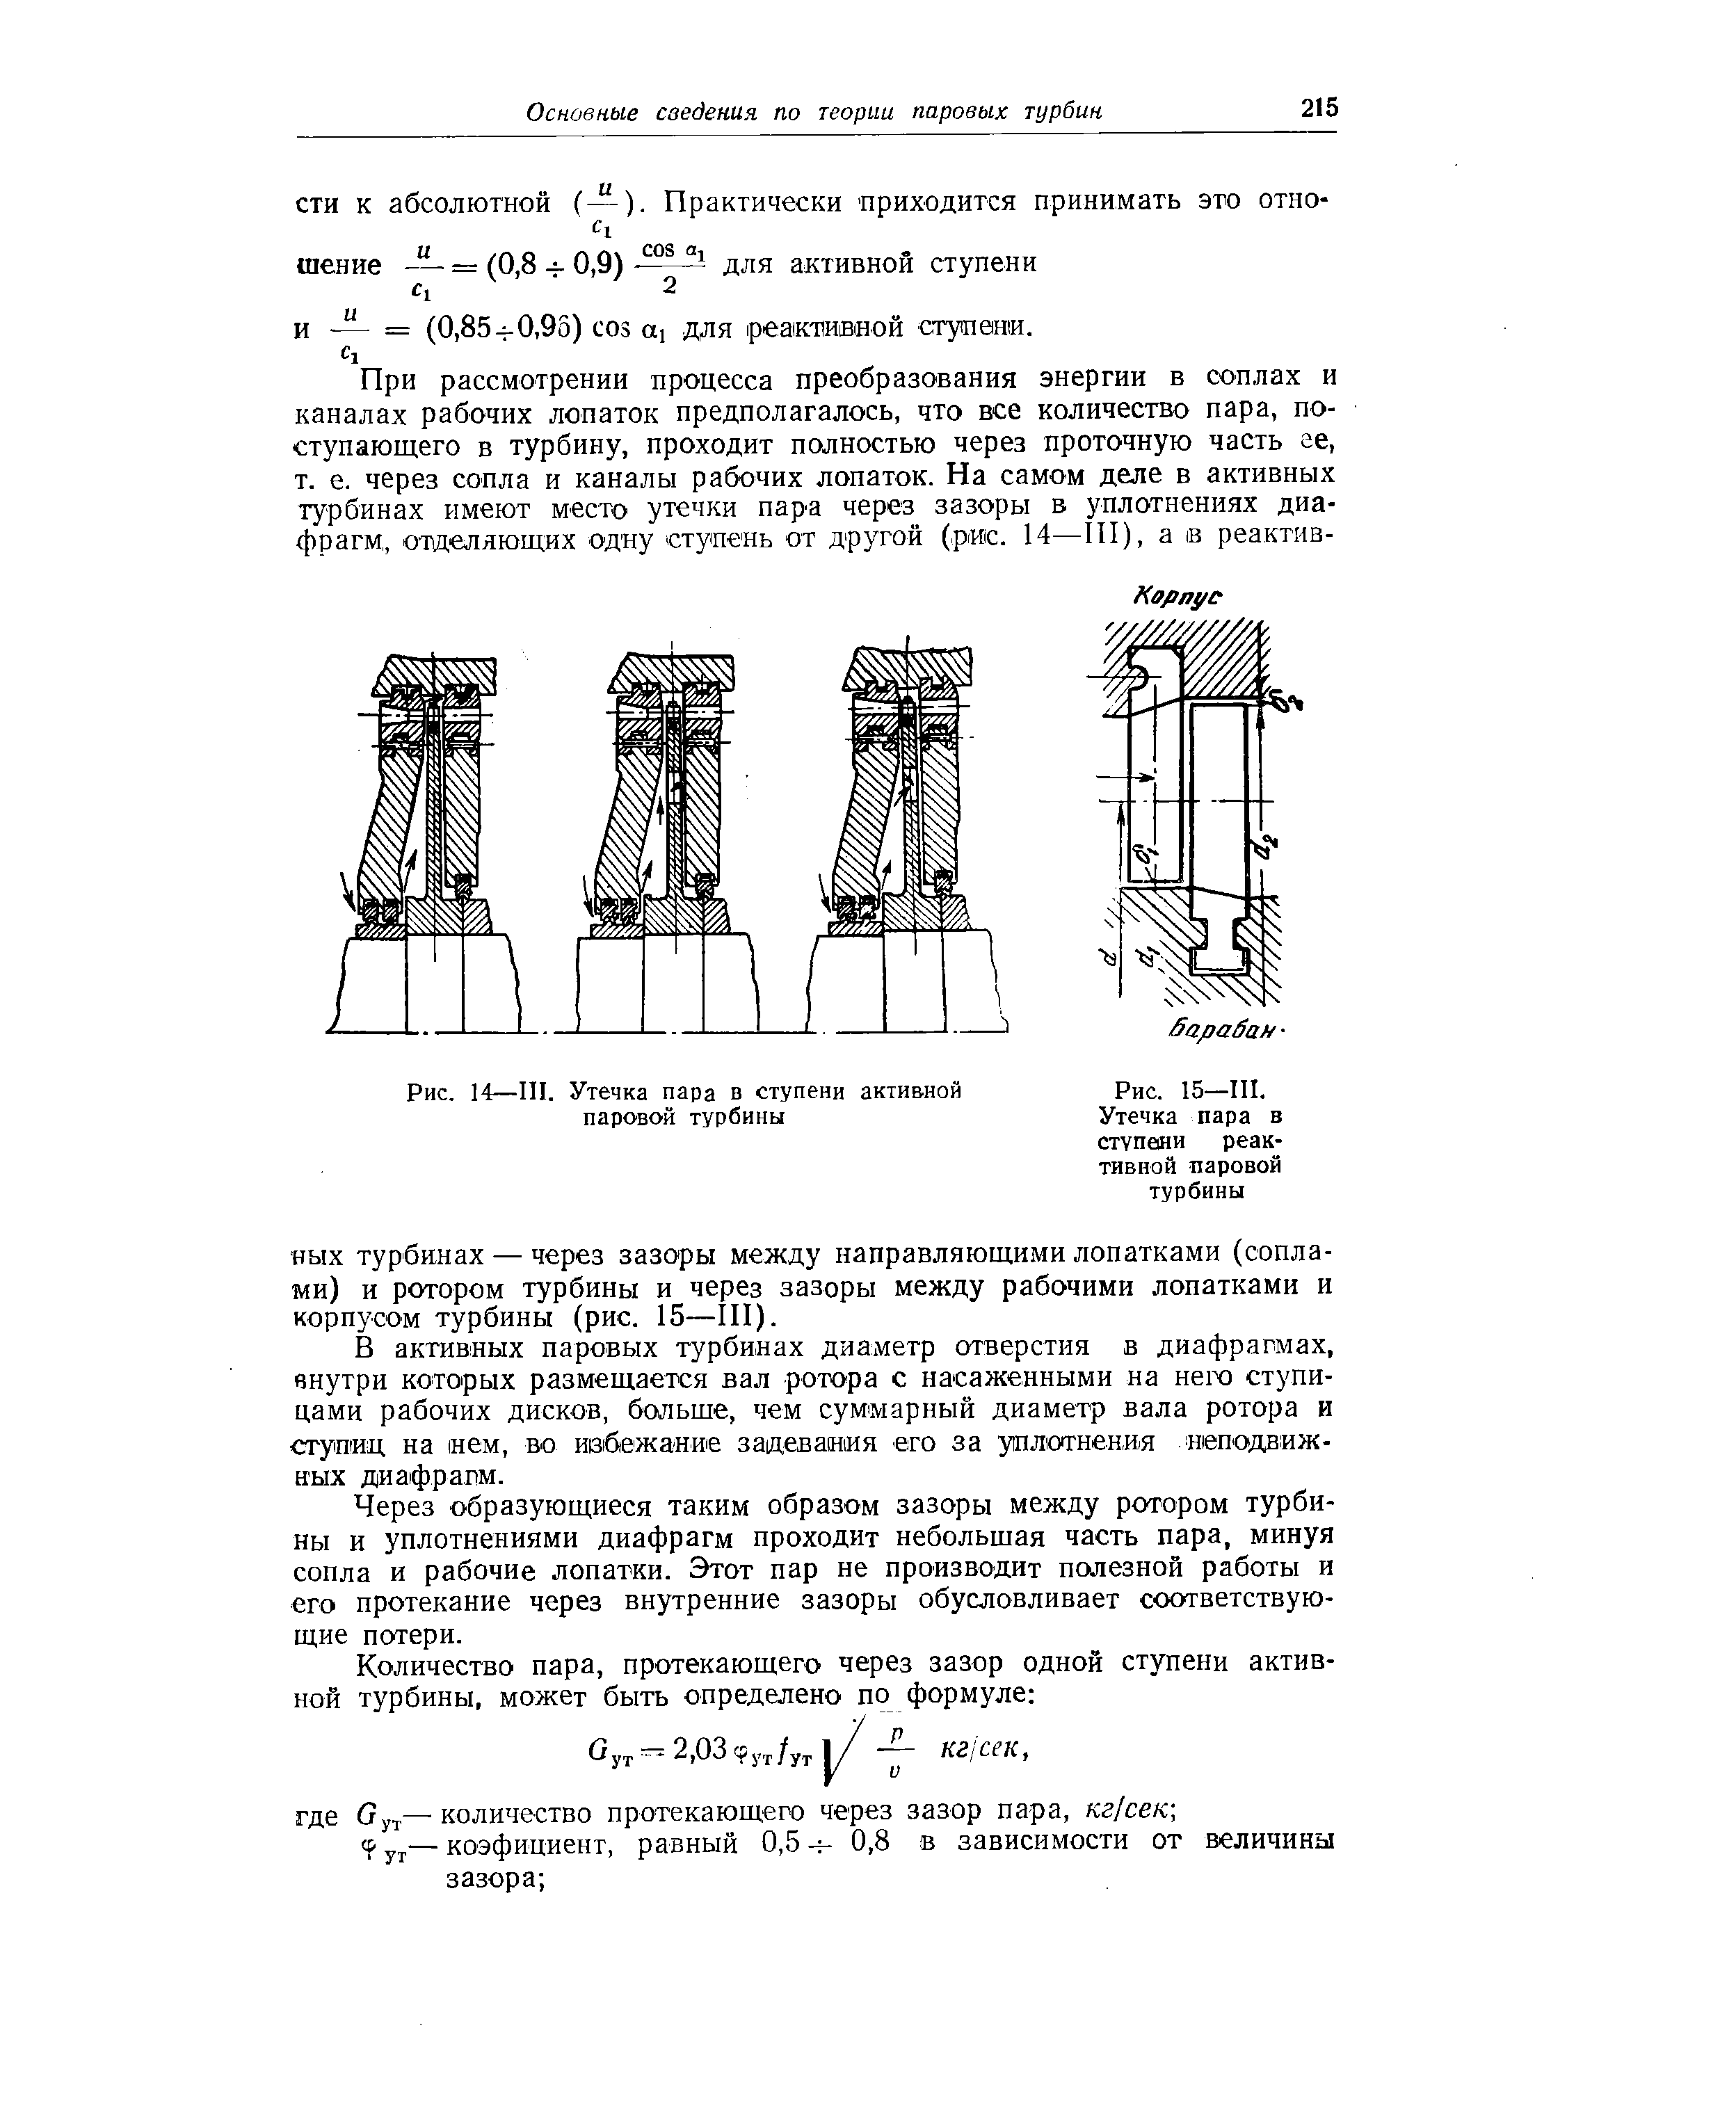 Рис. 15—III. Утечка пара в ступеяи реактивной паровой турбины
